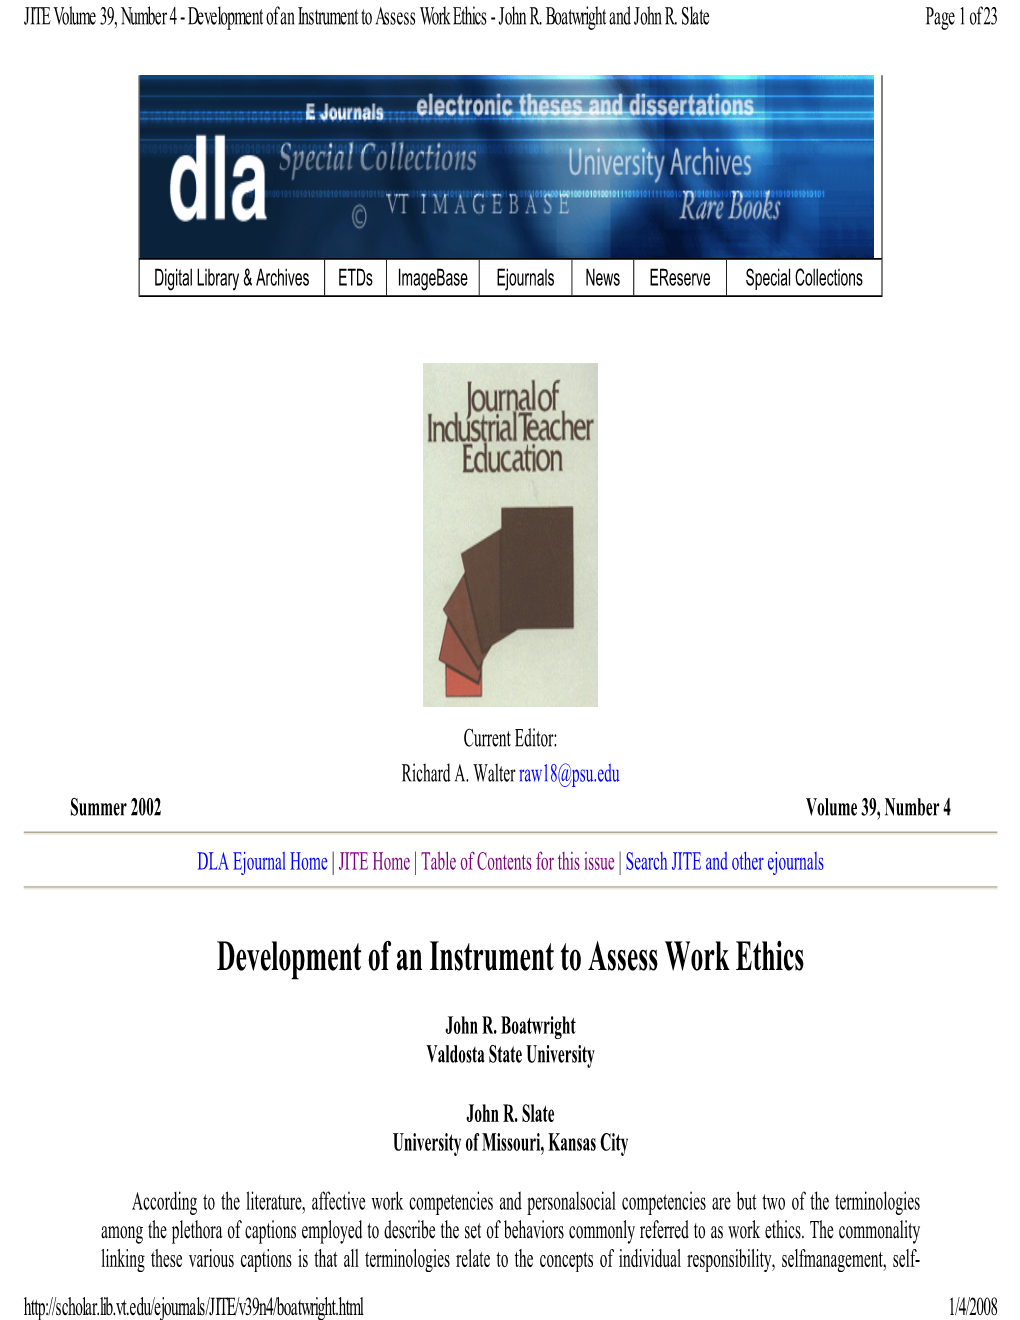 Development of an Instrument to Assess Work Ethics - John R